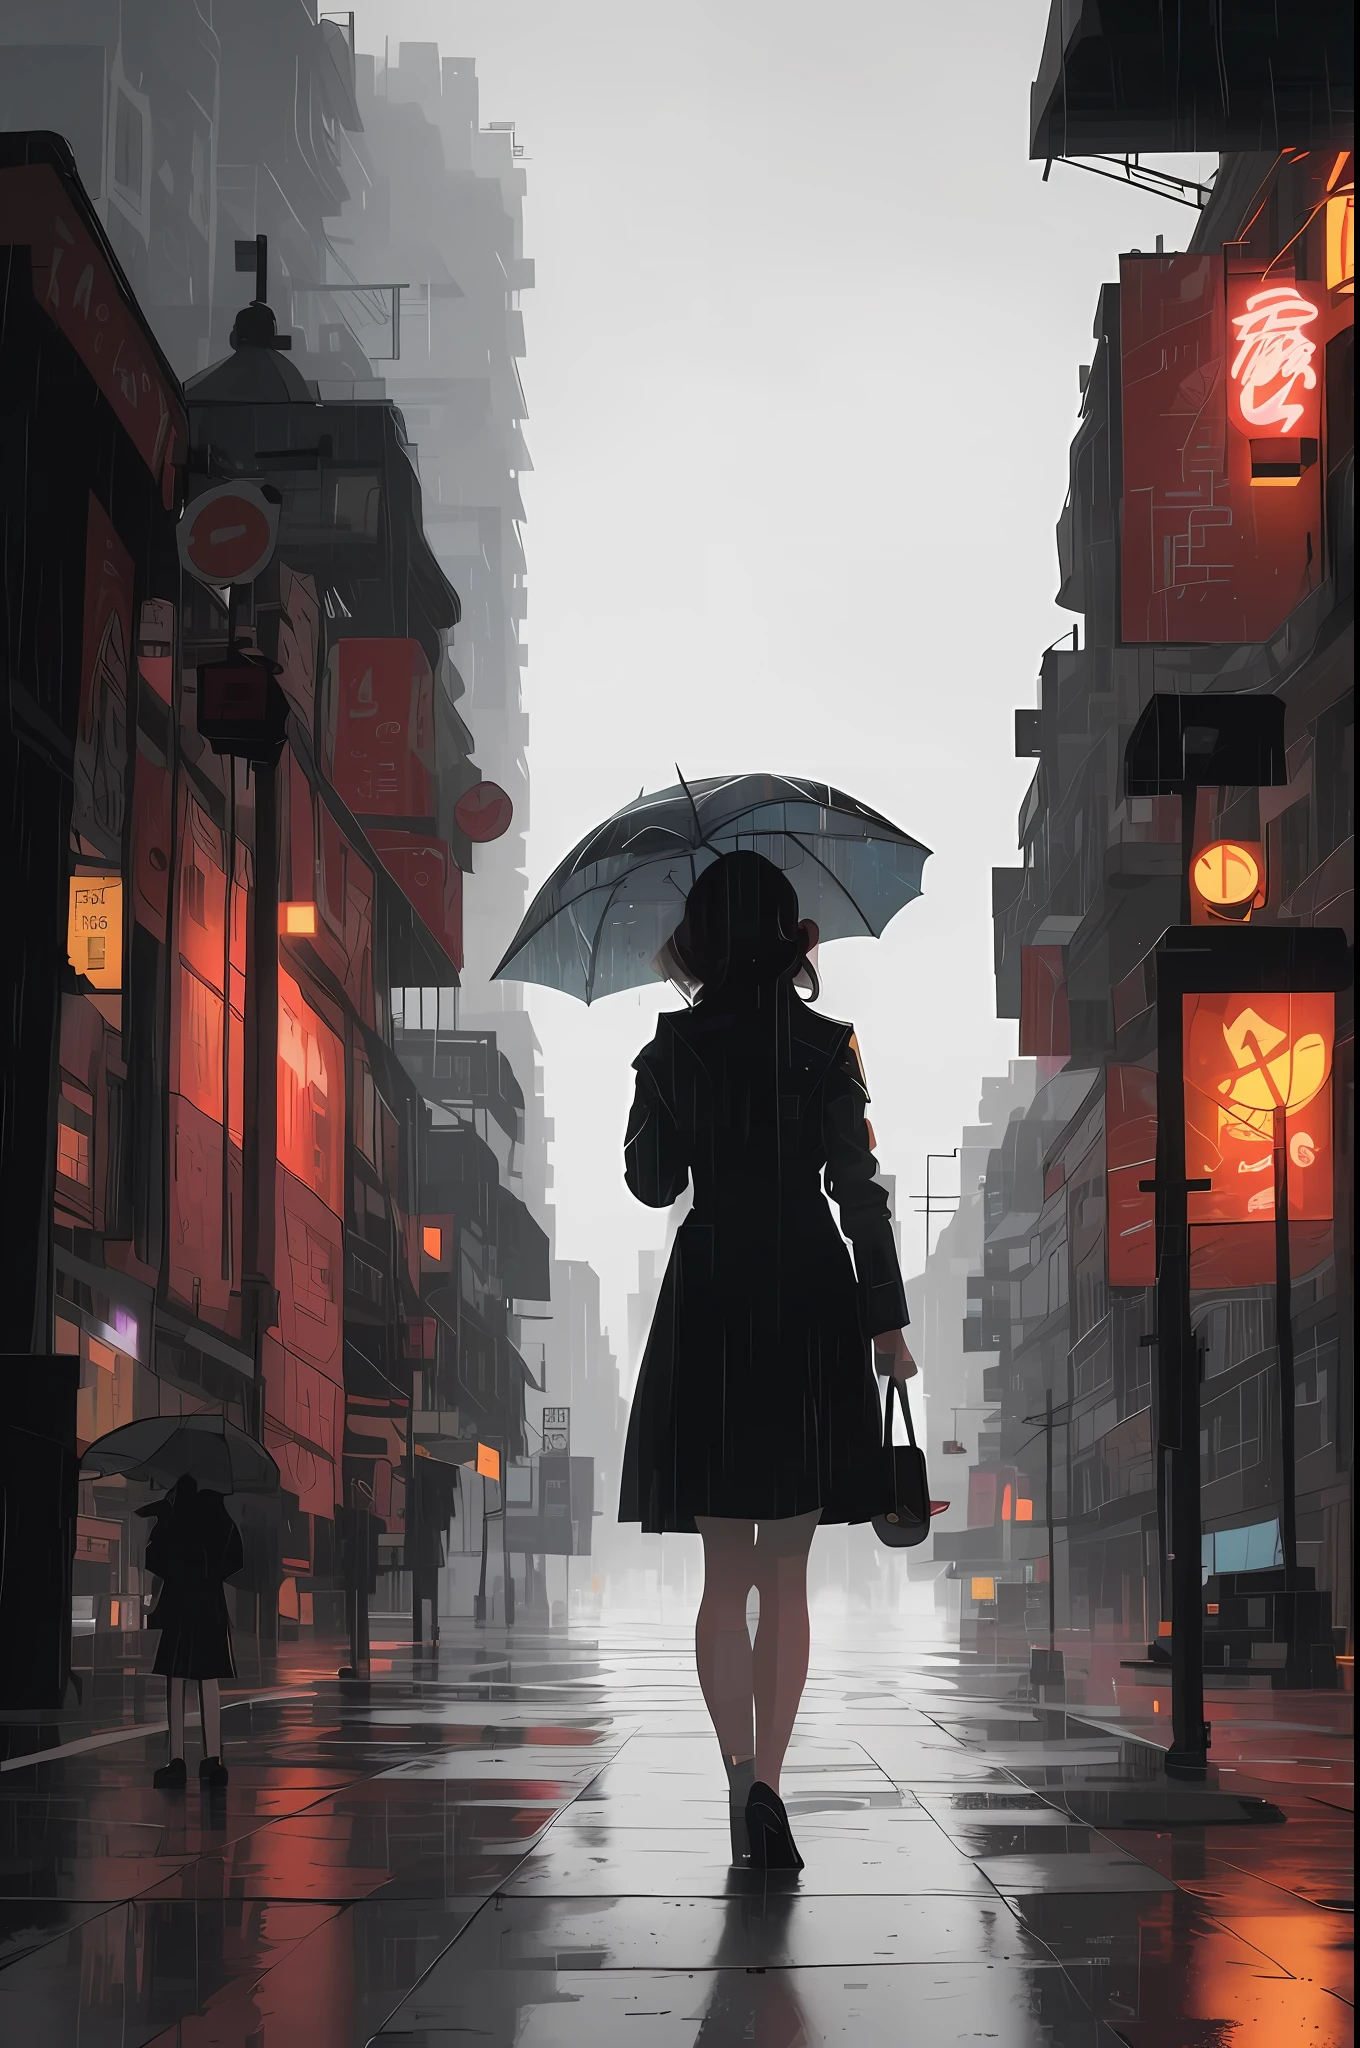 Há uma mulher andando pela rua com um guarda-chuva, cidade chuvosa cyberpunk, Vagando pela cidade, rua chuvosas in the background, obras de arte no estilo de guweiz, parado em uma rua da cidade, rua chuvosa, em uma cidade cyberpunk, style of Alena Aenami, noite chuvosa, artístico. Alena Aenami, arte estilizada de fantasia urbana